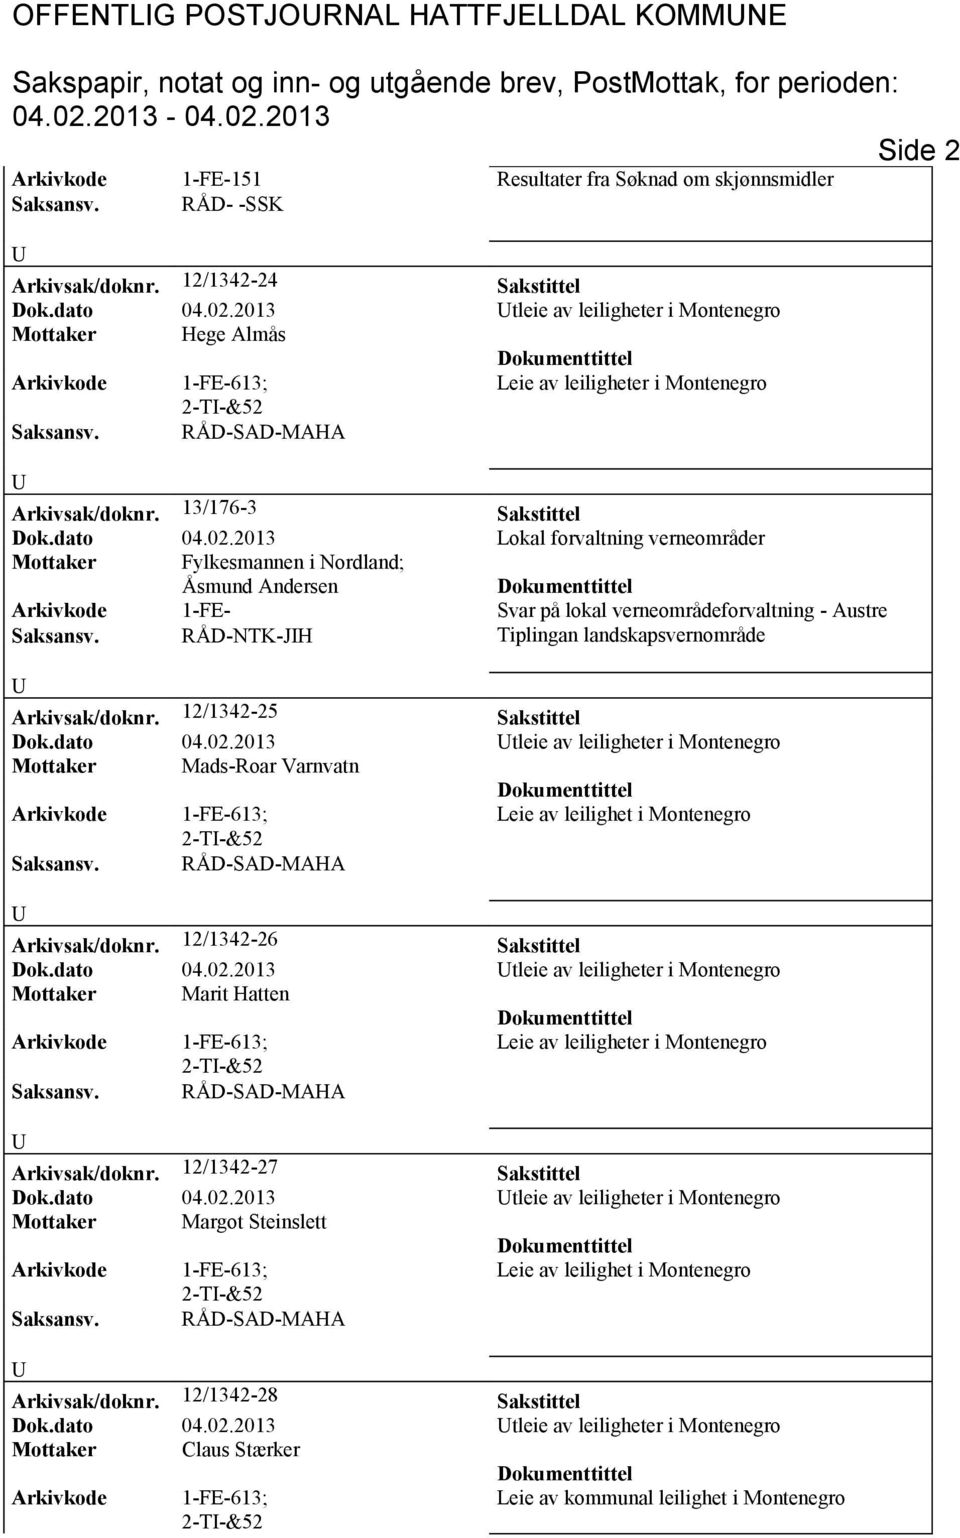 2013 Lokal forvaltning verneområder Mottaker Fylkesmannen i Nordland; Åsmund Andersen Arkivkode 1-FE- Svar på lokal verneområdeforvaltning - Austre RÅD-NTK-JH Tiplingan landskapsvernområde